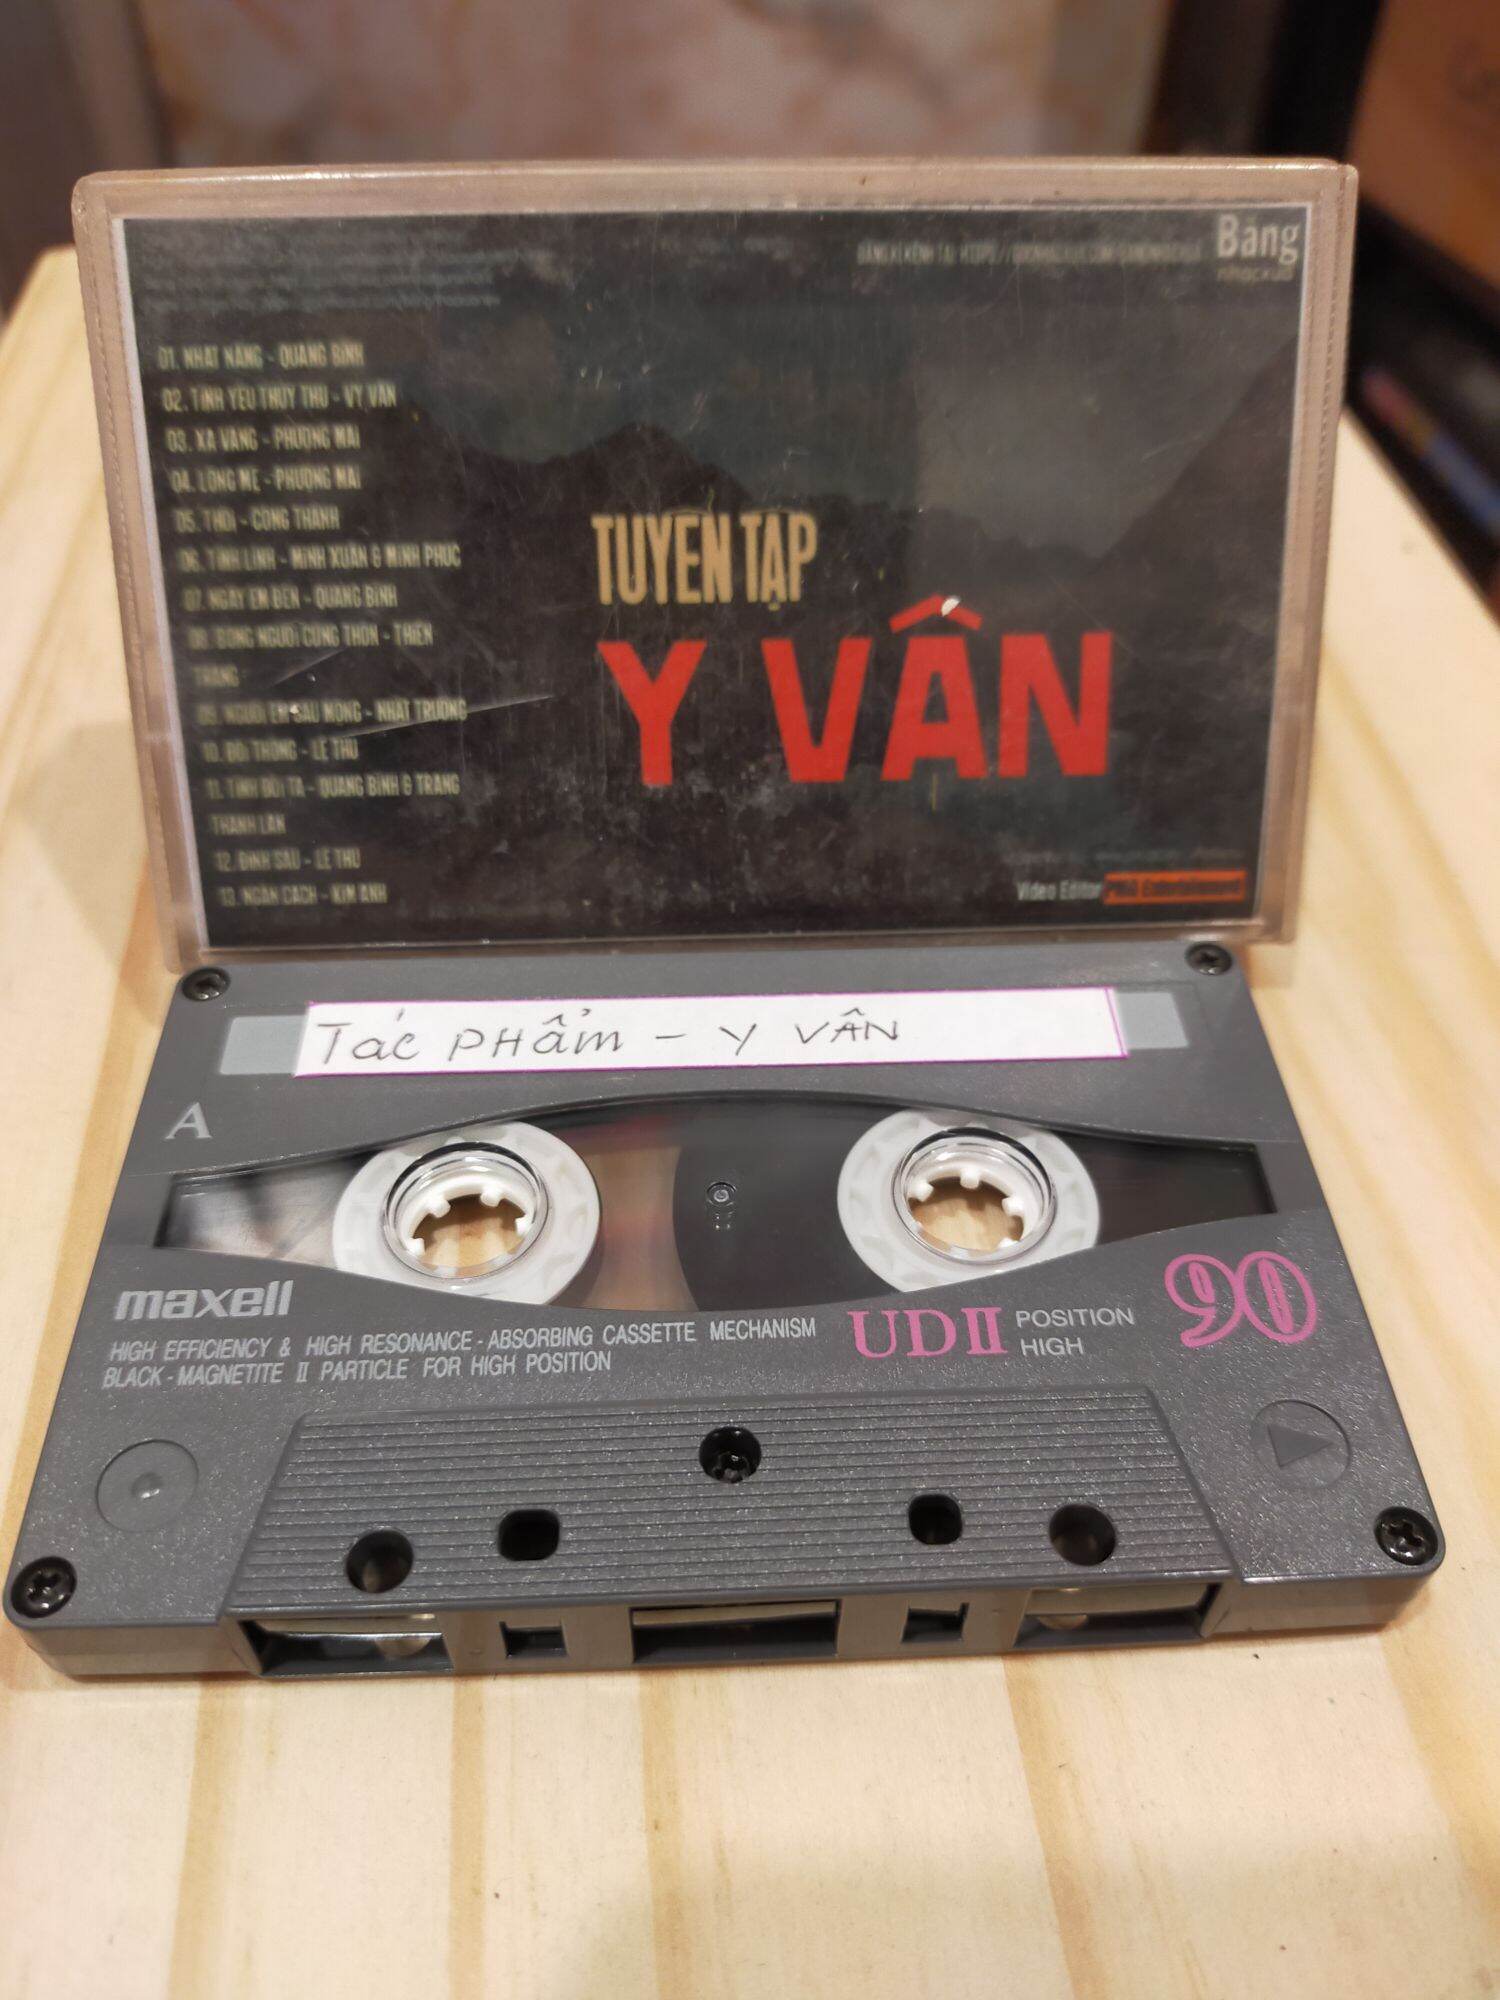 1 băng cassette maxell UD 2 tình khúc của y vân( lưu ý: đây là băng cũ